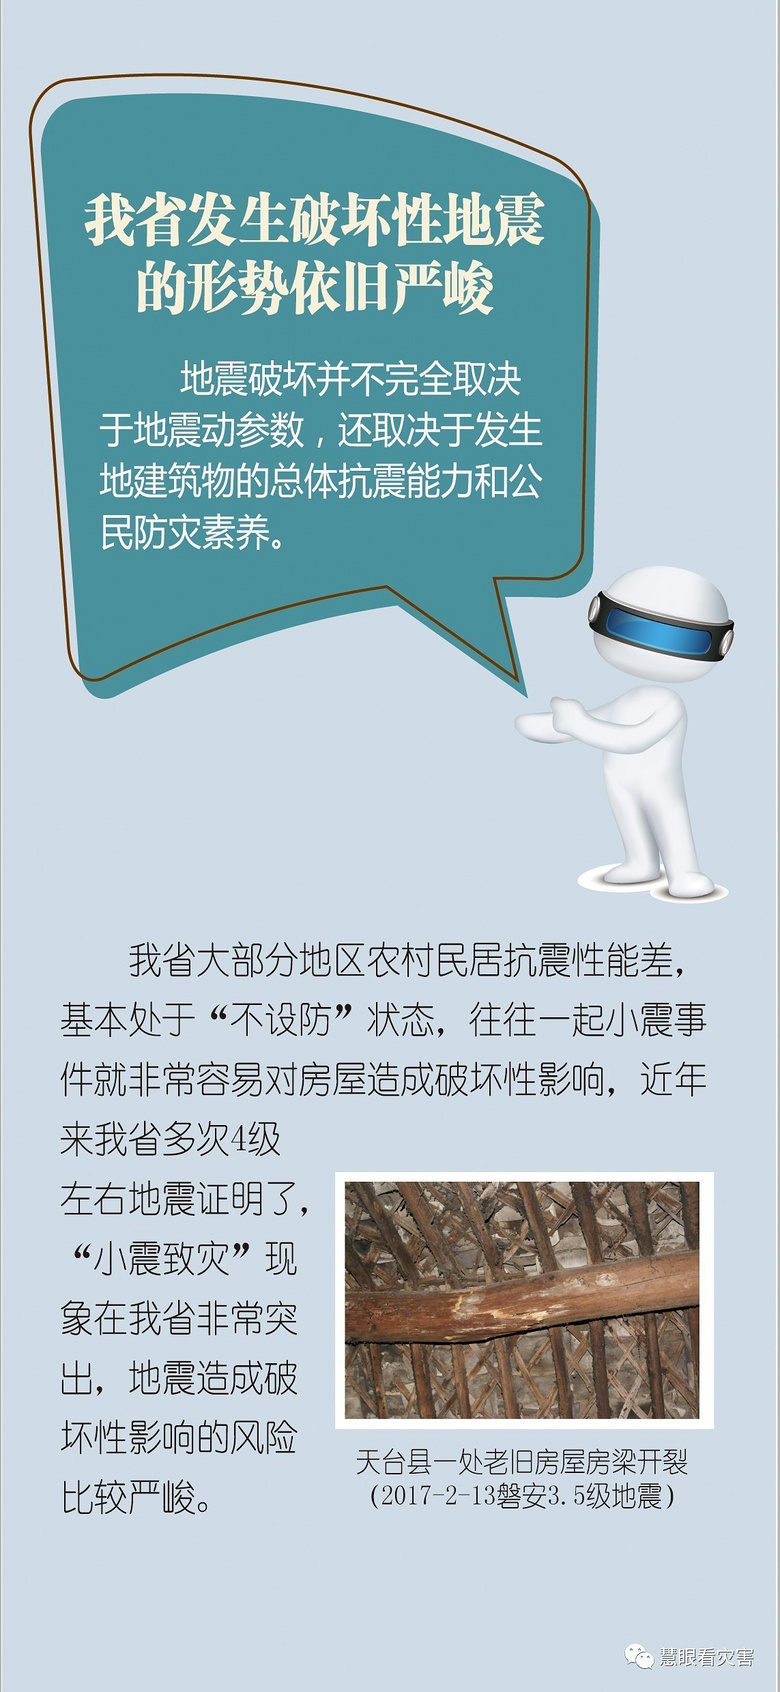 4.2级!杭州地震了!许村、长安等地表示有震感!